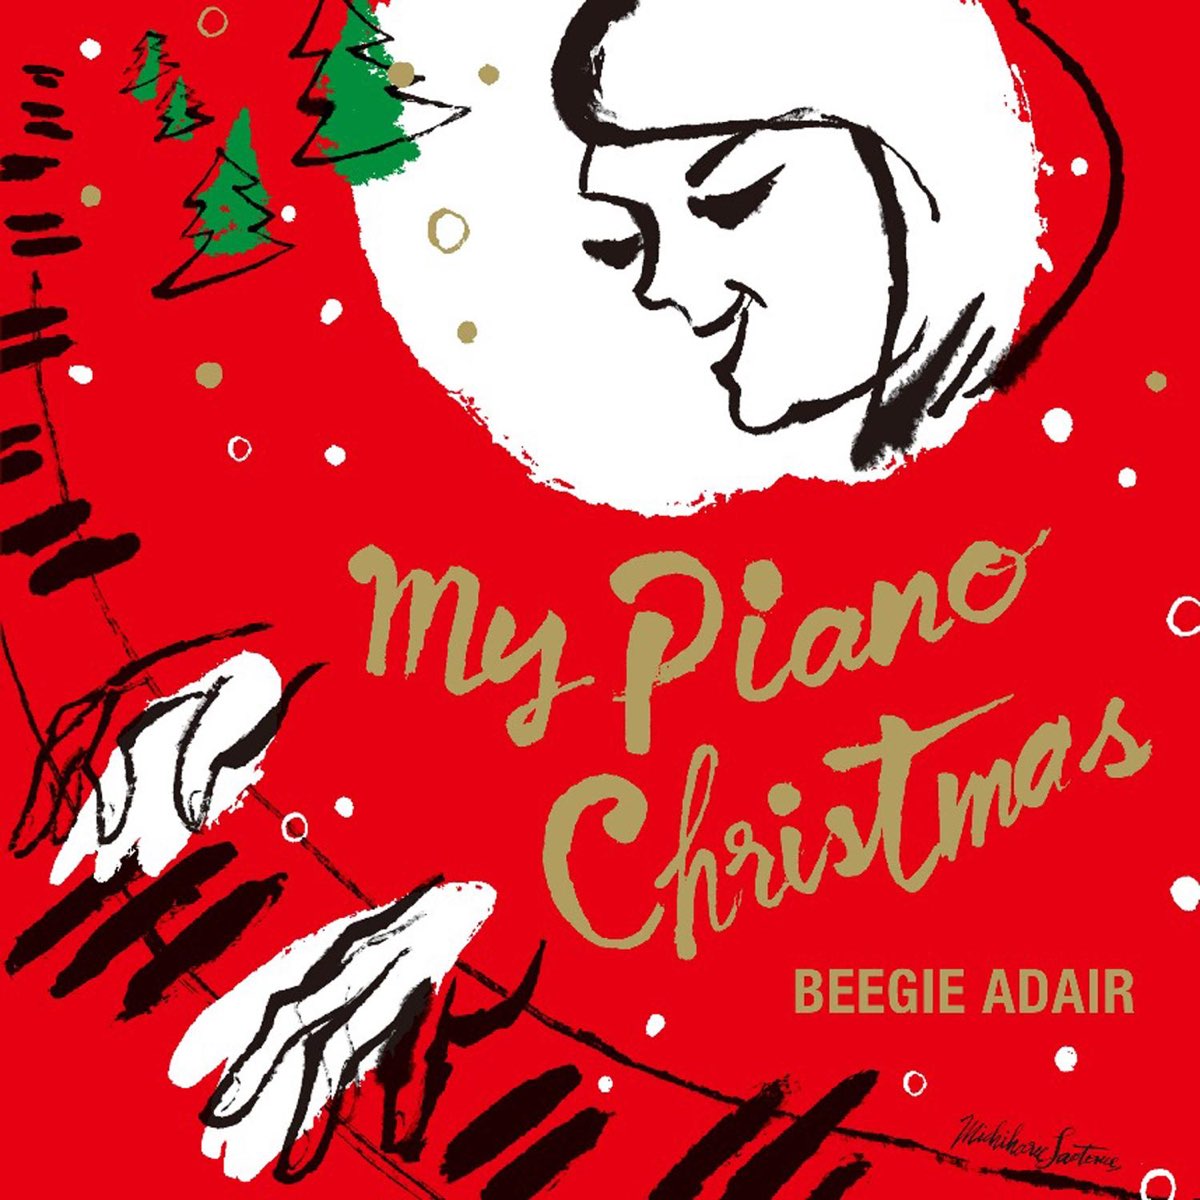 My Piano Christmas by Beegie Adair on Apple Music